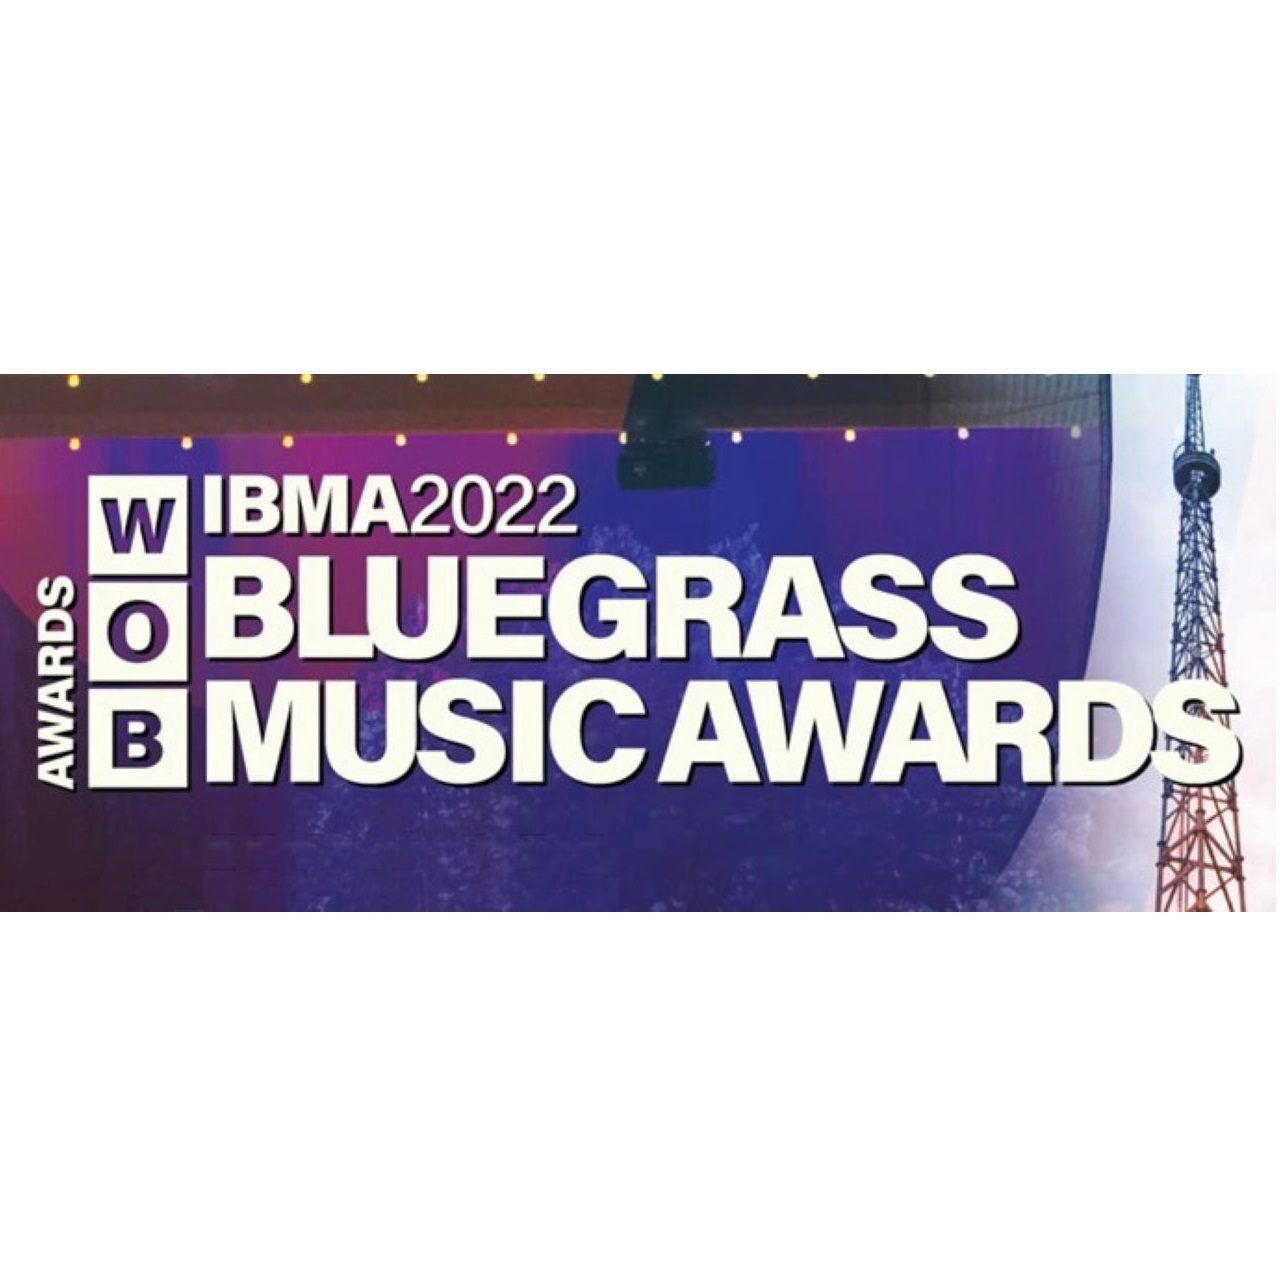 Bluegrass Music Awards 2022 logo